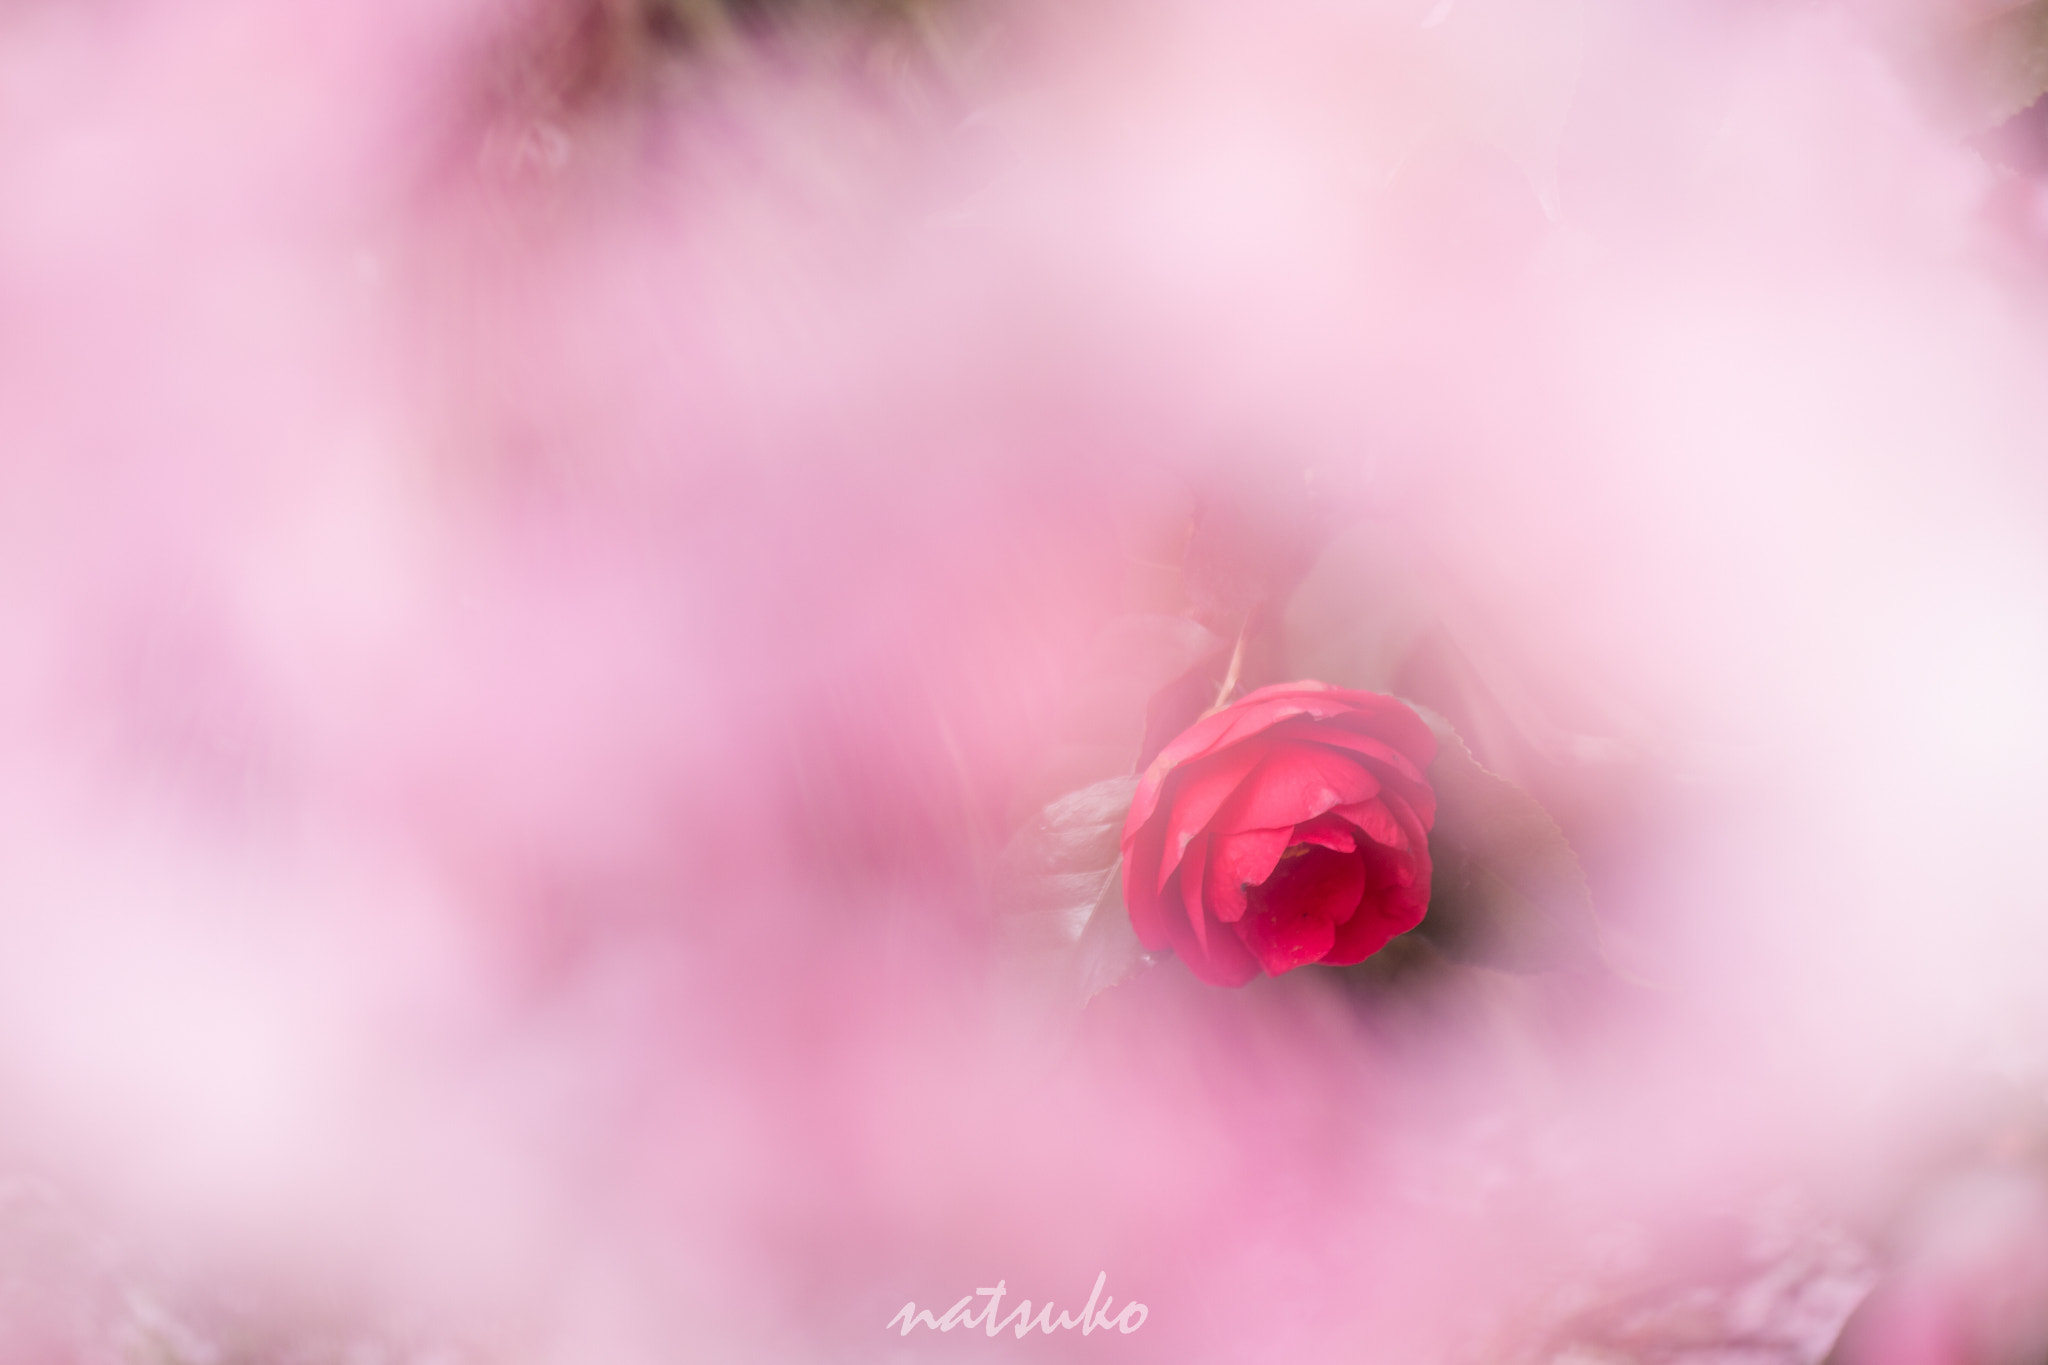 Canon EOS 70D sample photo. The camellia photography